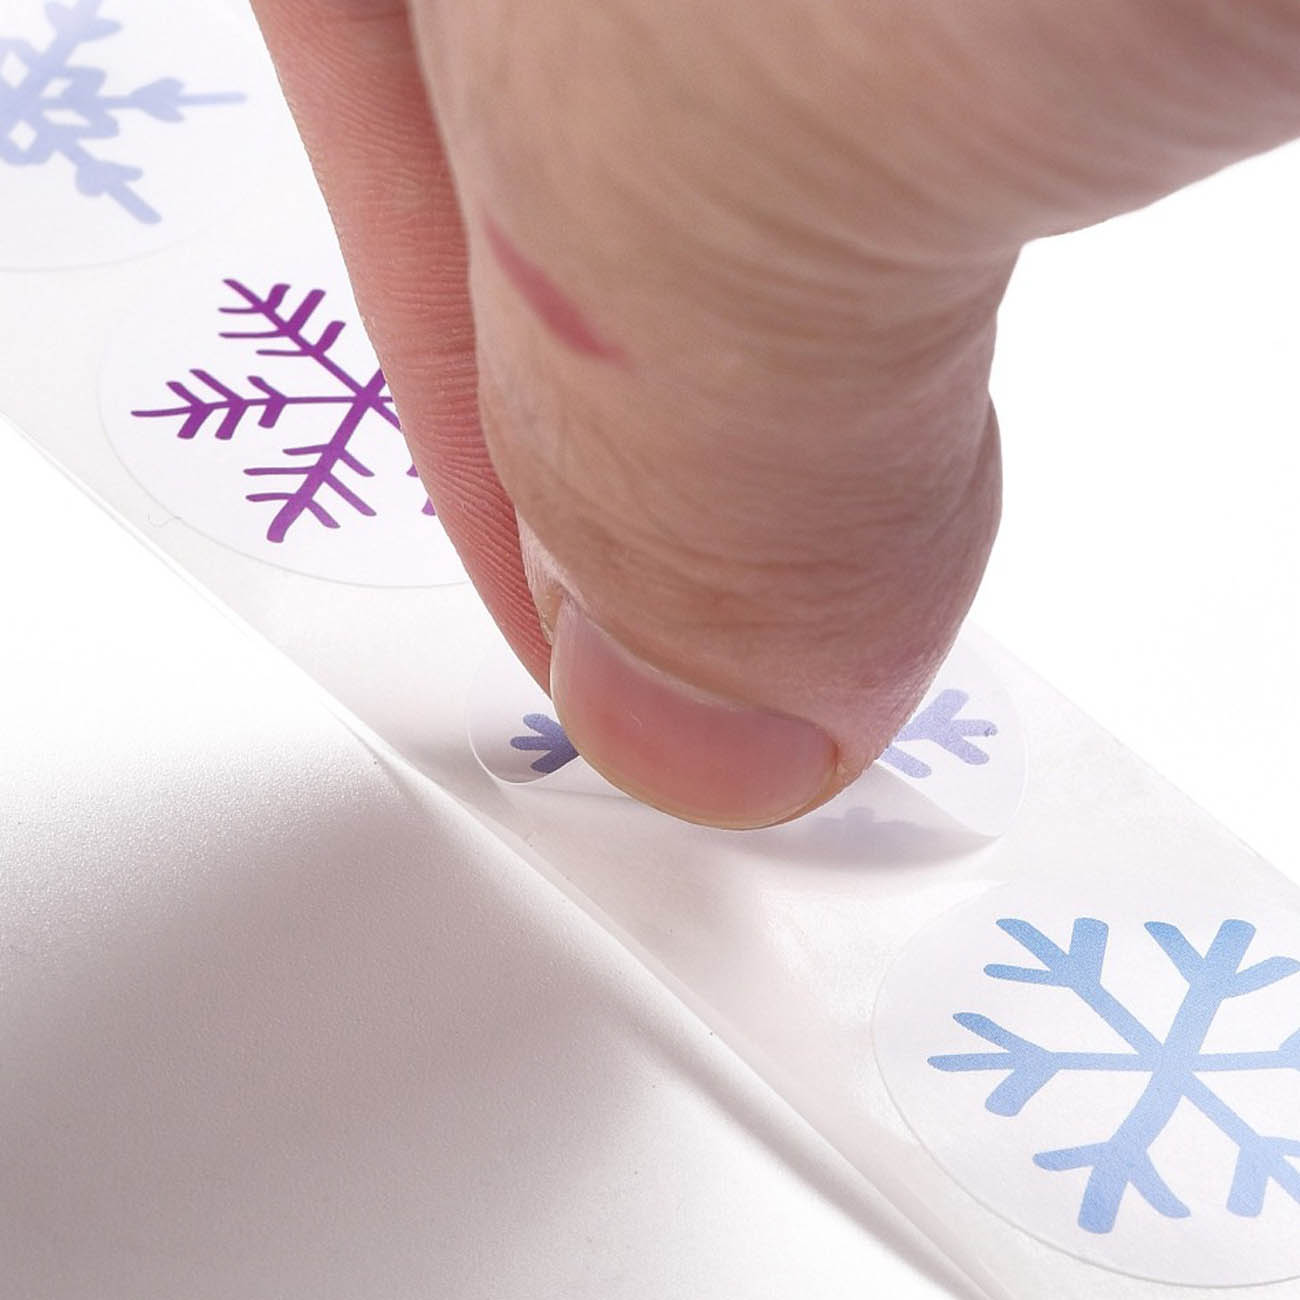 Набор из 500 наклеек-стикеров 25 мм Снежинки для подарочной упаковки и декорирования (тип2)